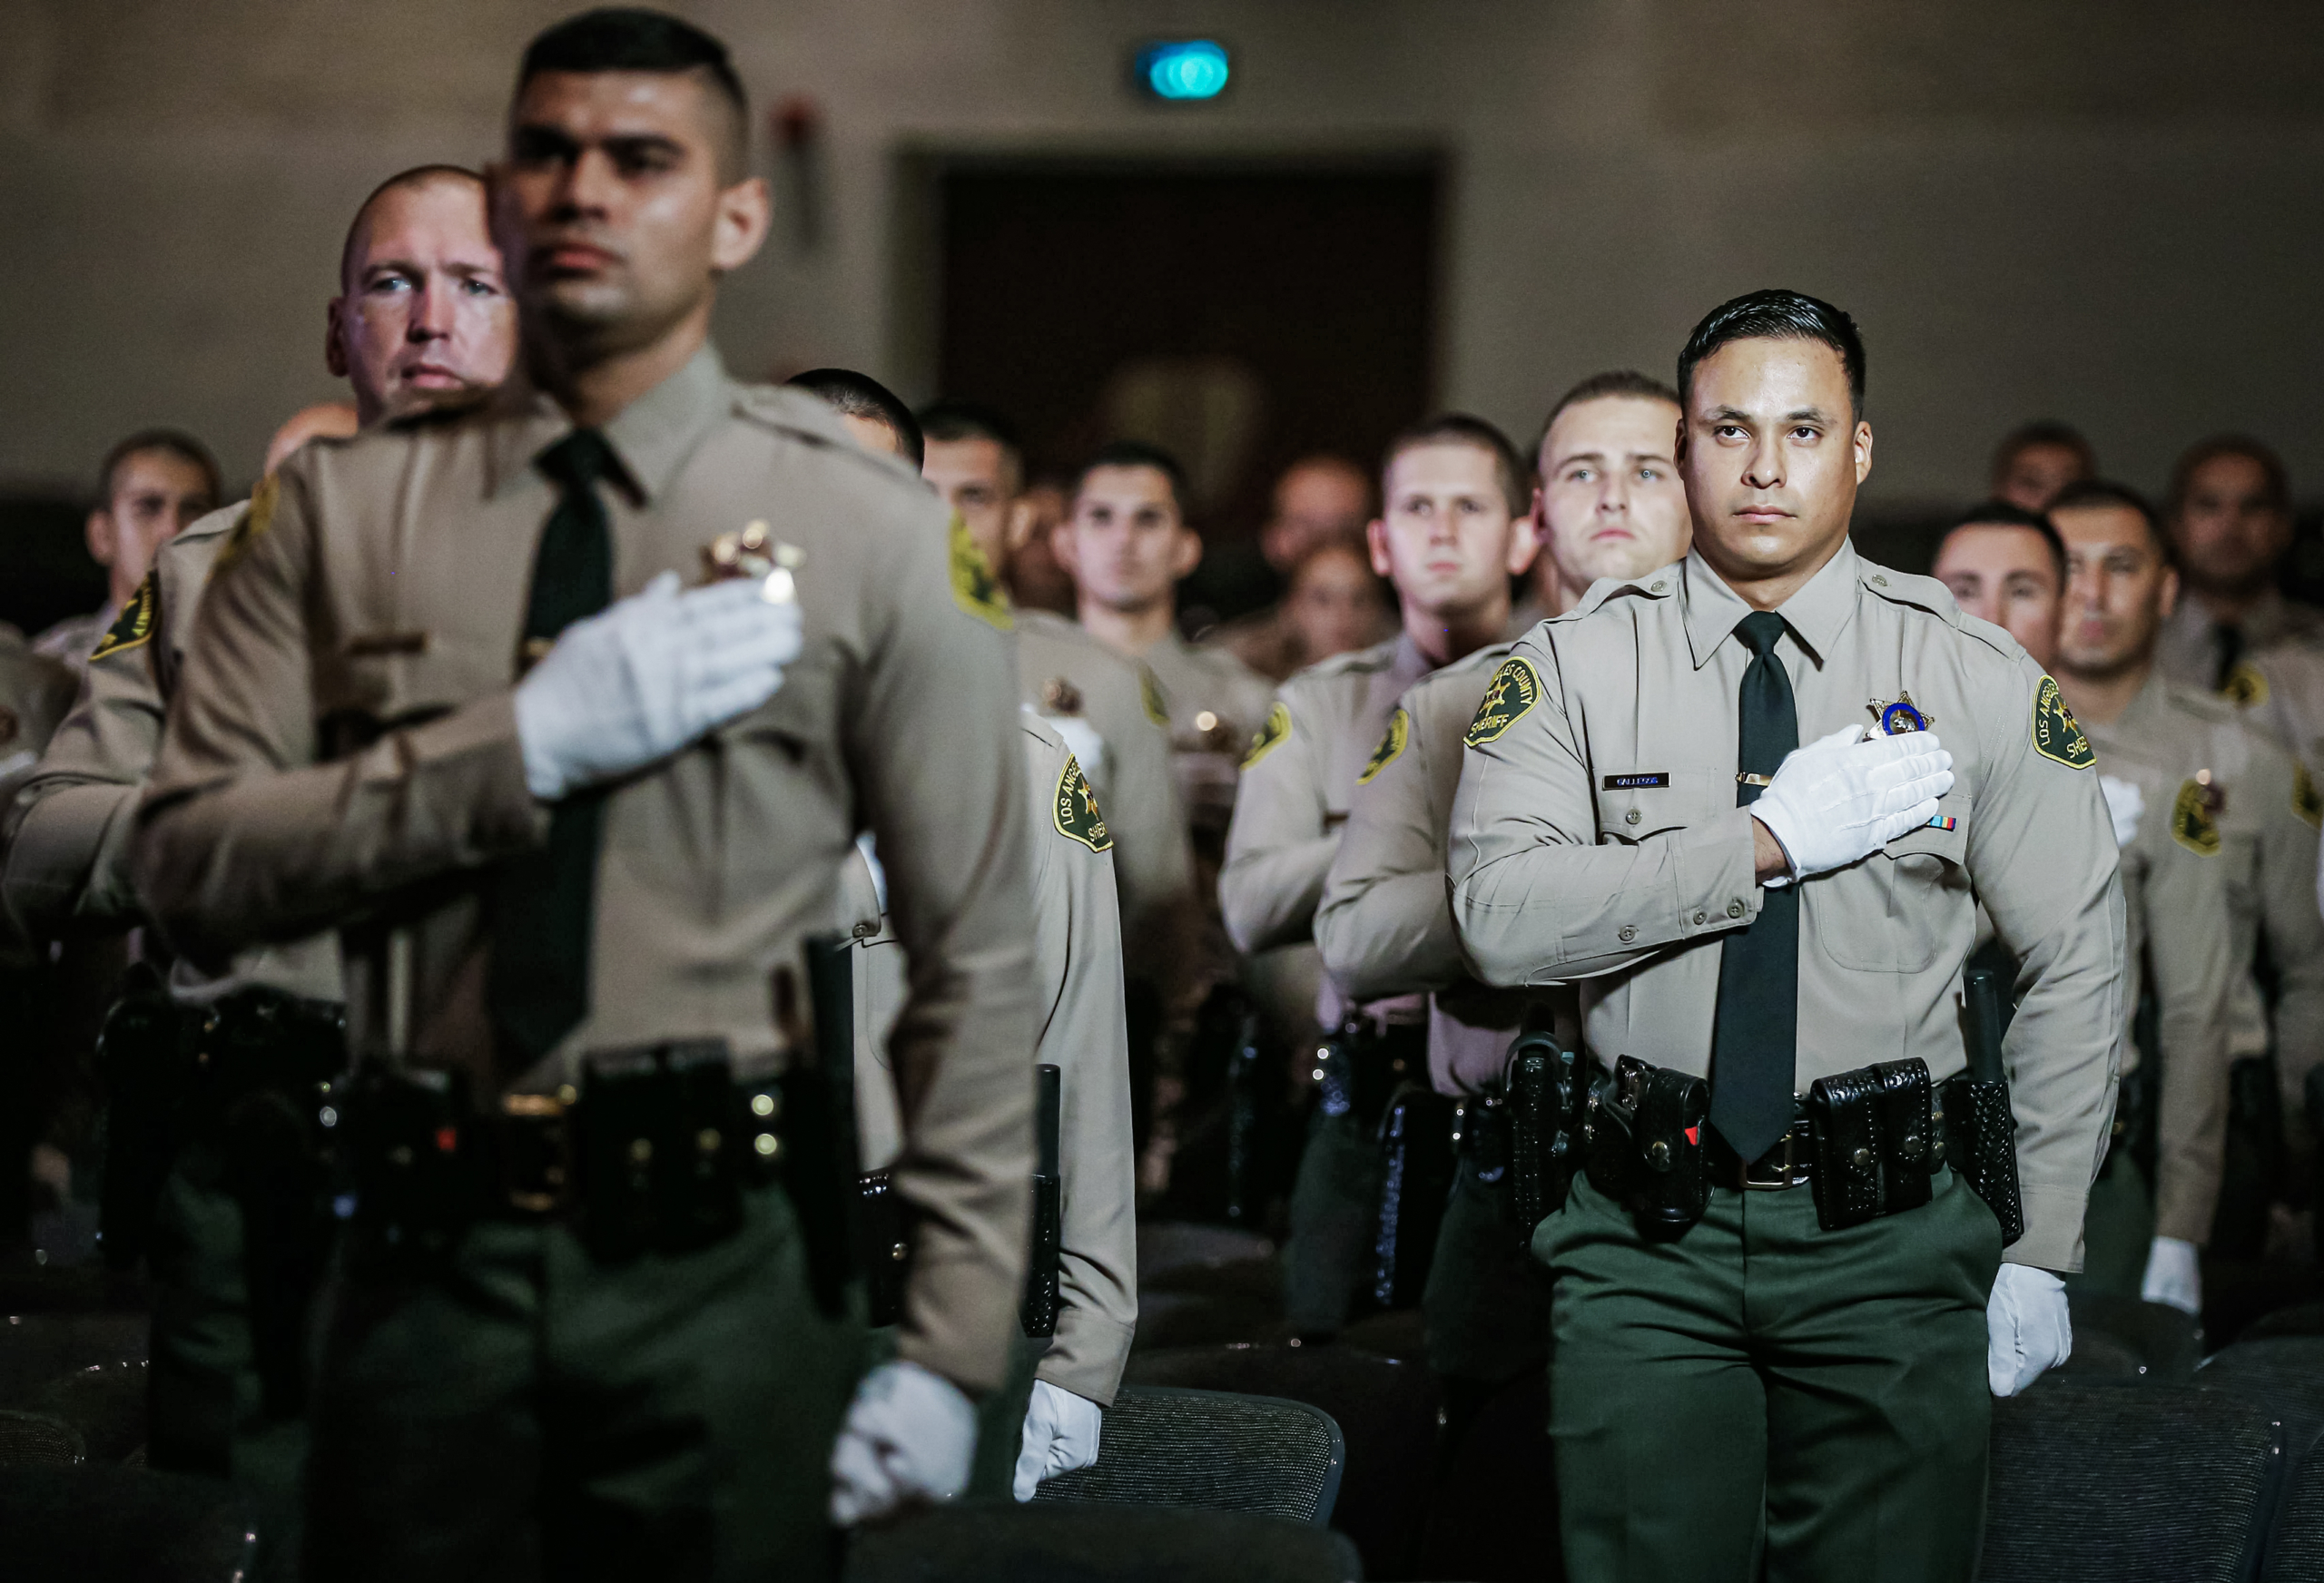 Các sinh viên tốt nghiệp của Học viện Cảnh sát trưởng Quận Los Angeles đứng lên tuyên thệ trung thành trong lễ tốt nghiệp của họ tại Đại học East Los Angeles ở Monterey Park, California, vào ngày 21/08/2020. (Ảnh: Mario Tama/Getty Images)